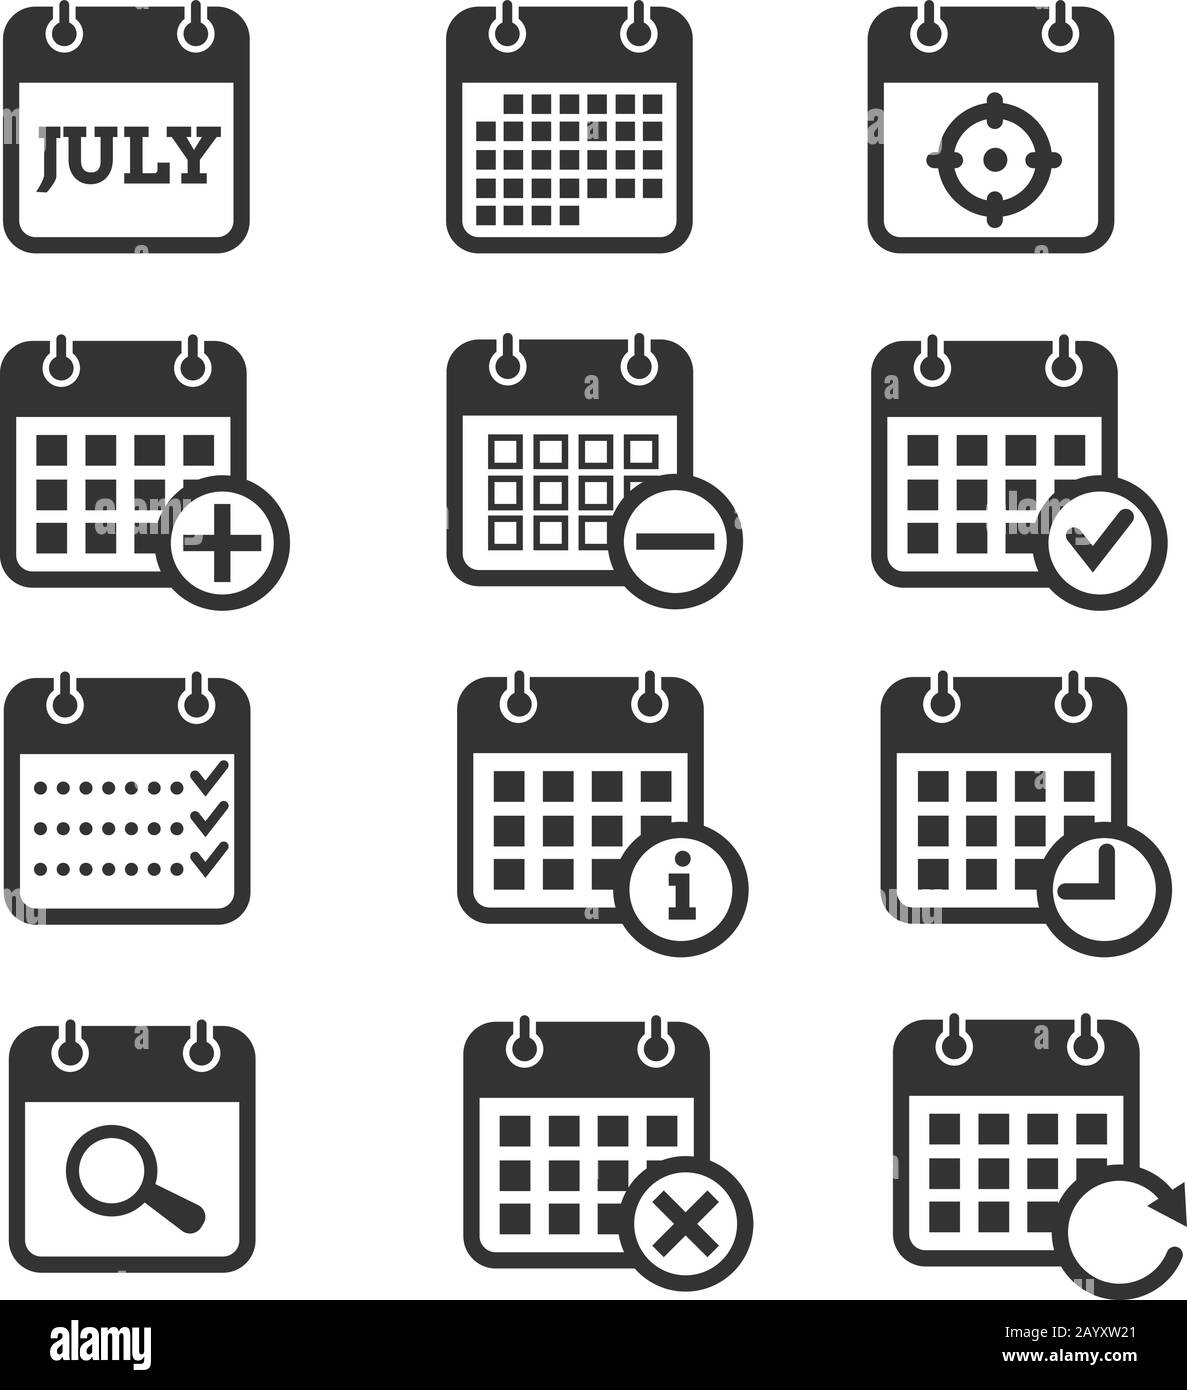 Symbole für Uhrzeit, Datum und Kalendervektor. Kalendersymbole für Veranstalter und Veranstaltung, Erinnerung und Tagesordnung Stock Vektor